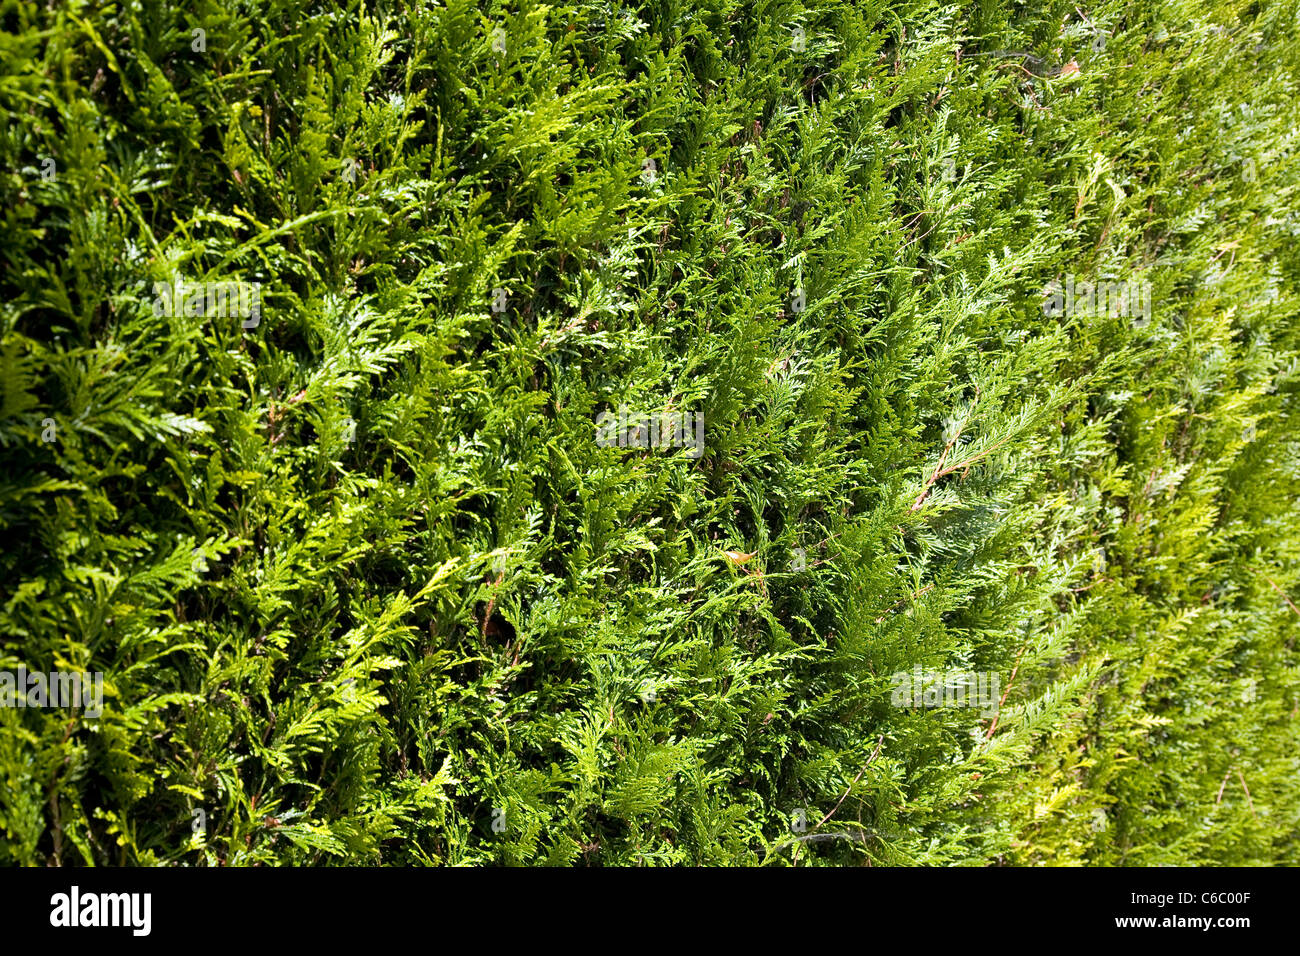 Leylandii Hedge foliage Stock Photo